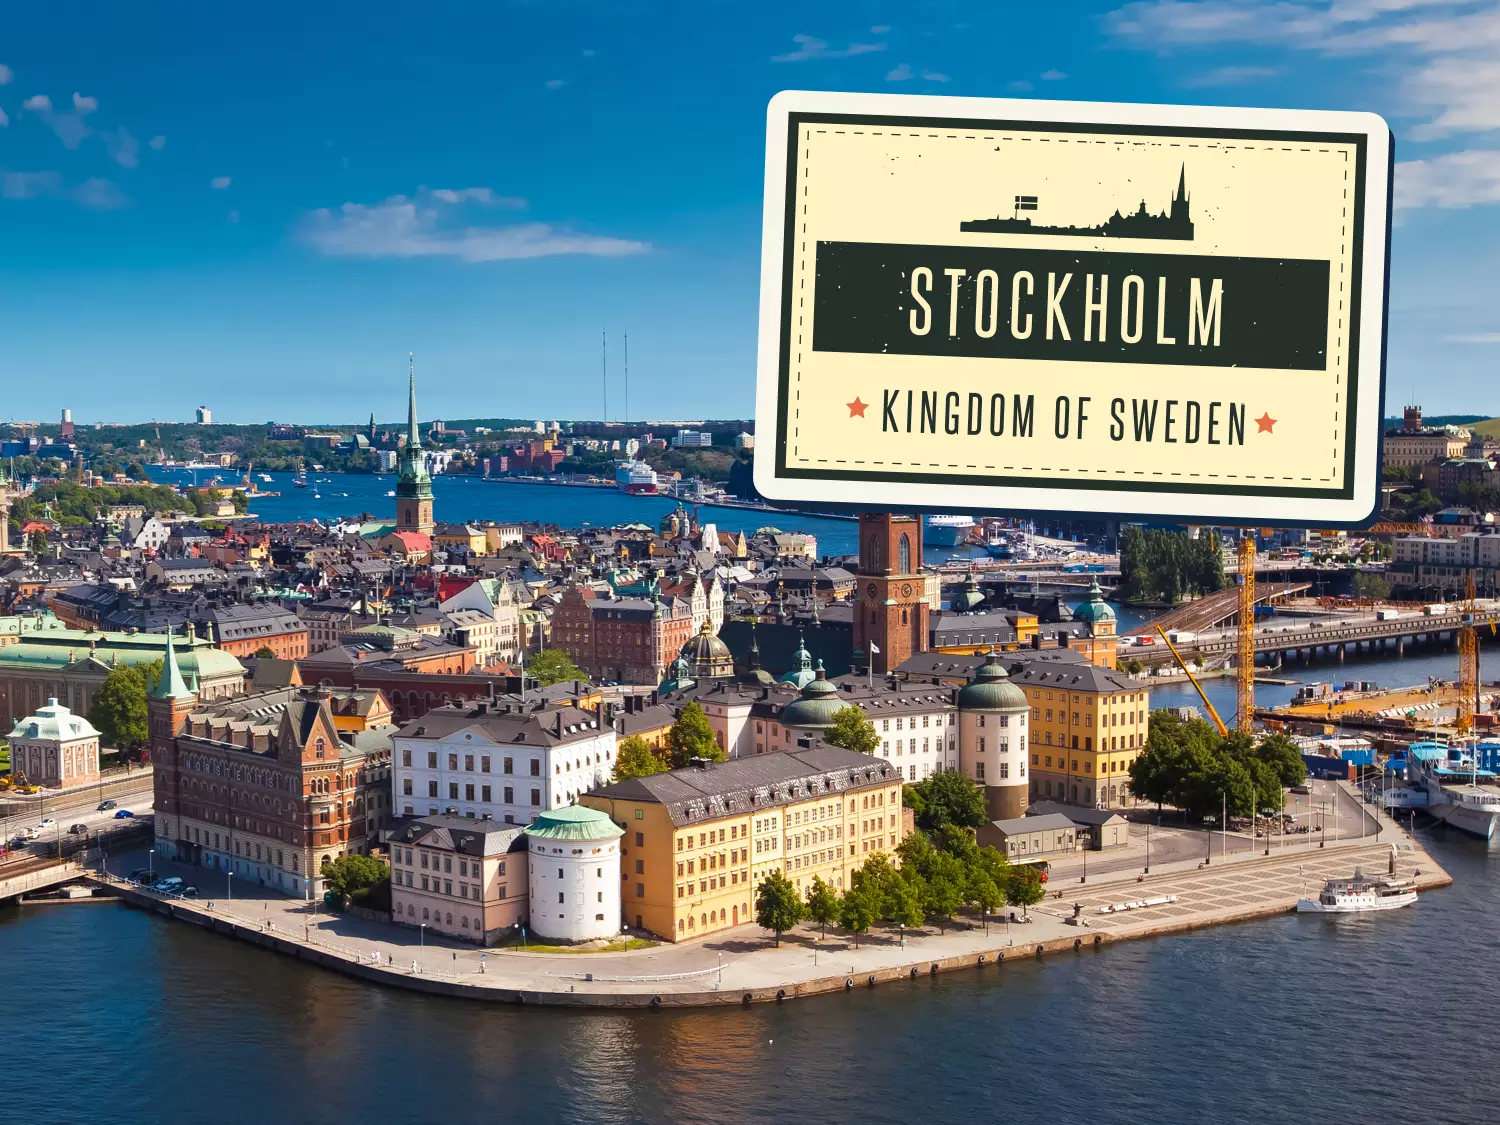 Stokholm City